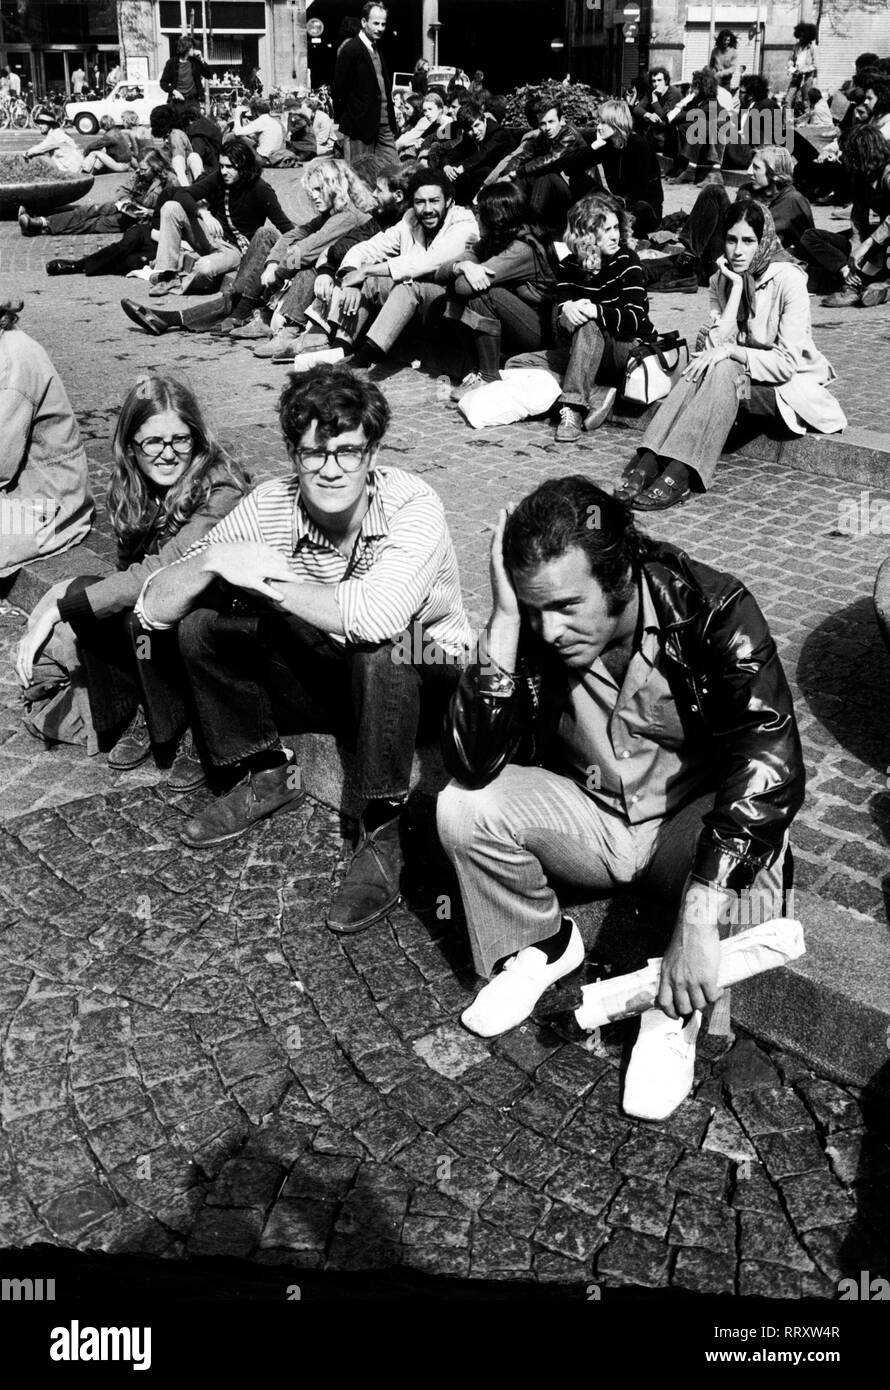 Niederlande - Holland, 1970er Jahre, Jugendliche, Hippies in Amsterdam. Foto von Erich Andres Der 'Dam' in Amsterdam, Treffpunkt der Hippies. Aufnahme Anfang 70er Jahre Stockfoto